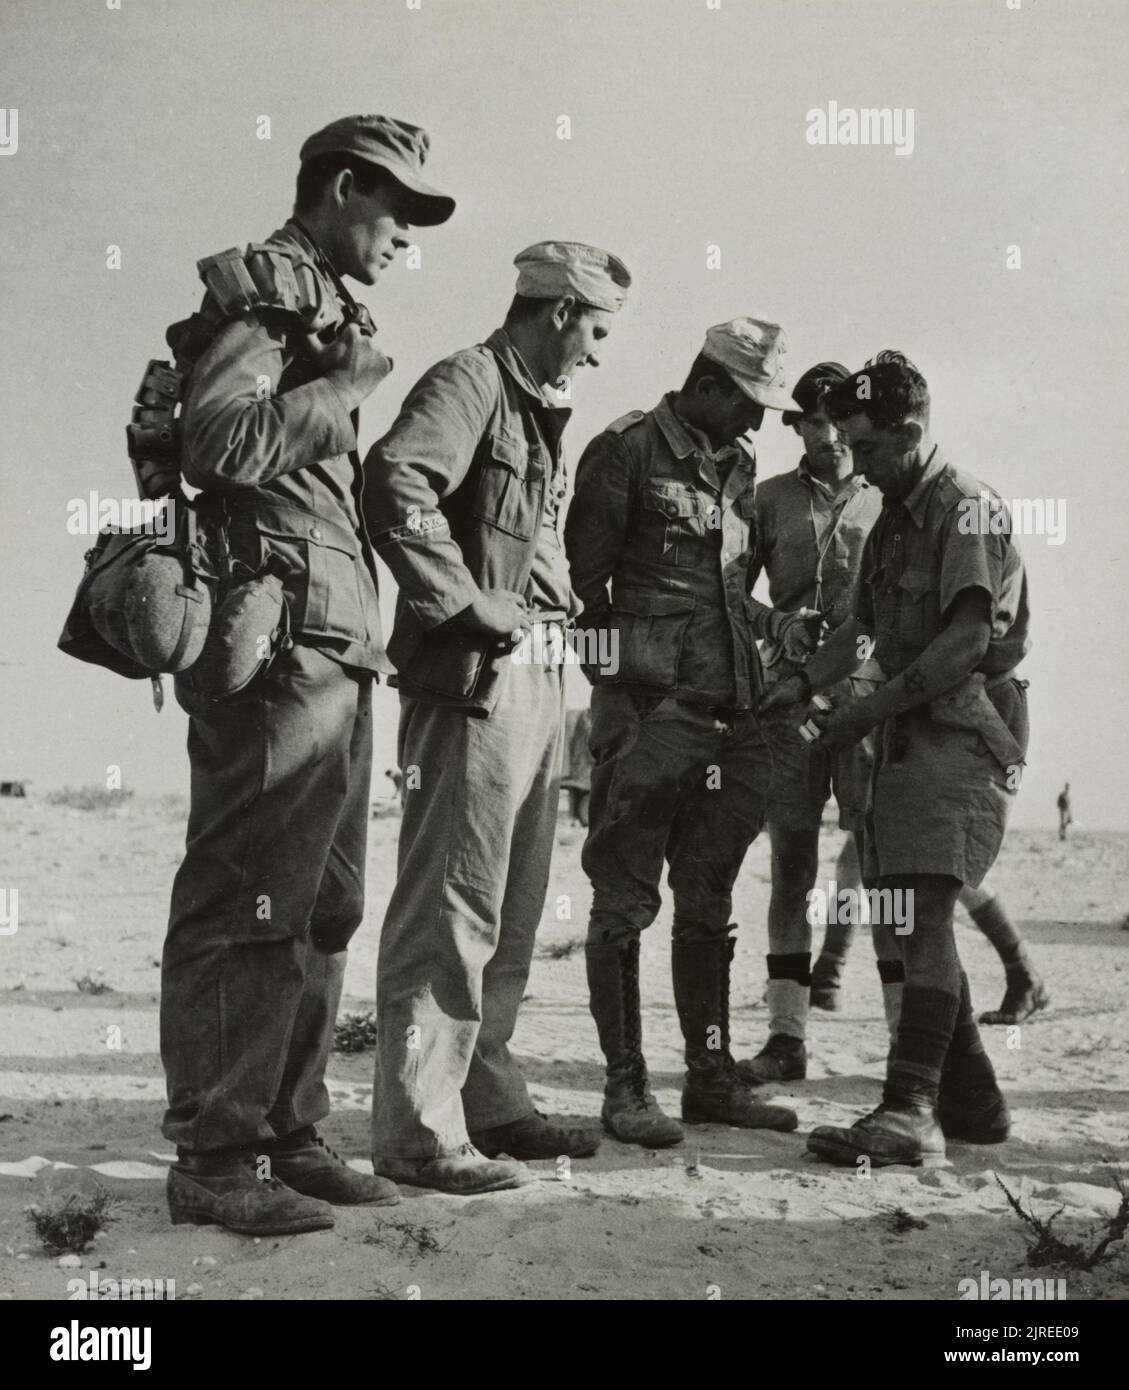 Une photo vintage vers 1942 montrant des soldats britanniques fouillant des prisonniers de guerre allemands de la division légère allemande 90th Afrika korps après avoir été capturé à El Alamein Egypte Banque D'Images